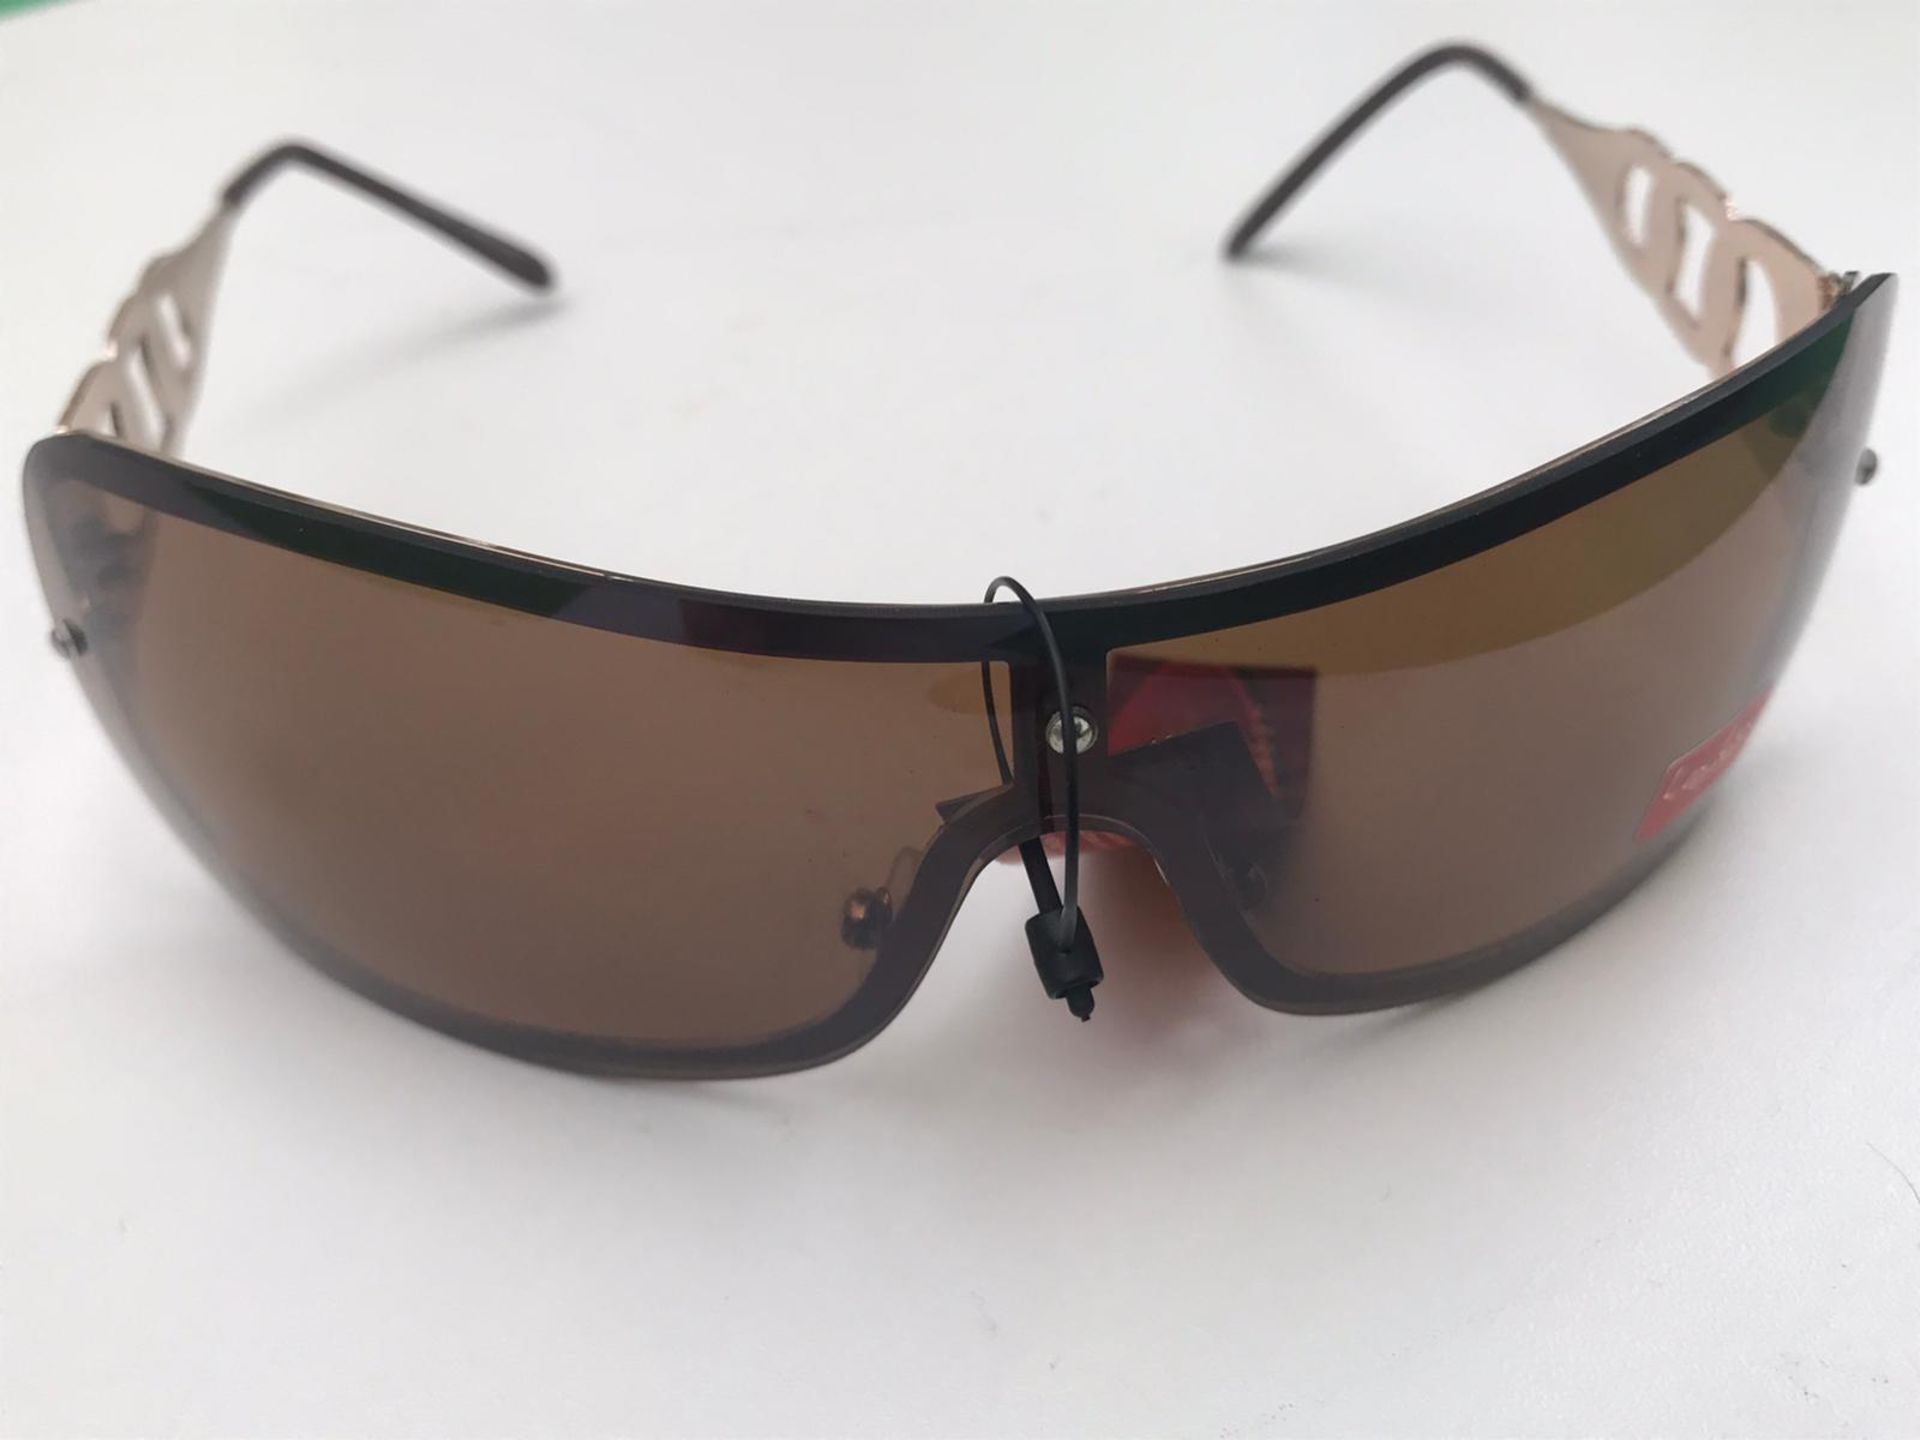 500x La Lu Branded Sunglasses | Various Styles | Unopened & Unused - Image 21 of 33